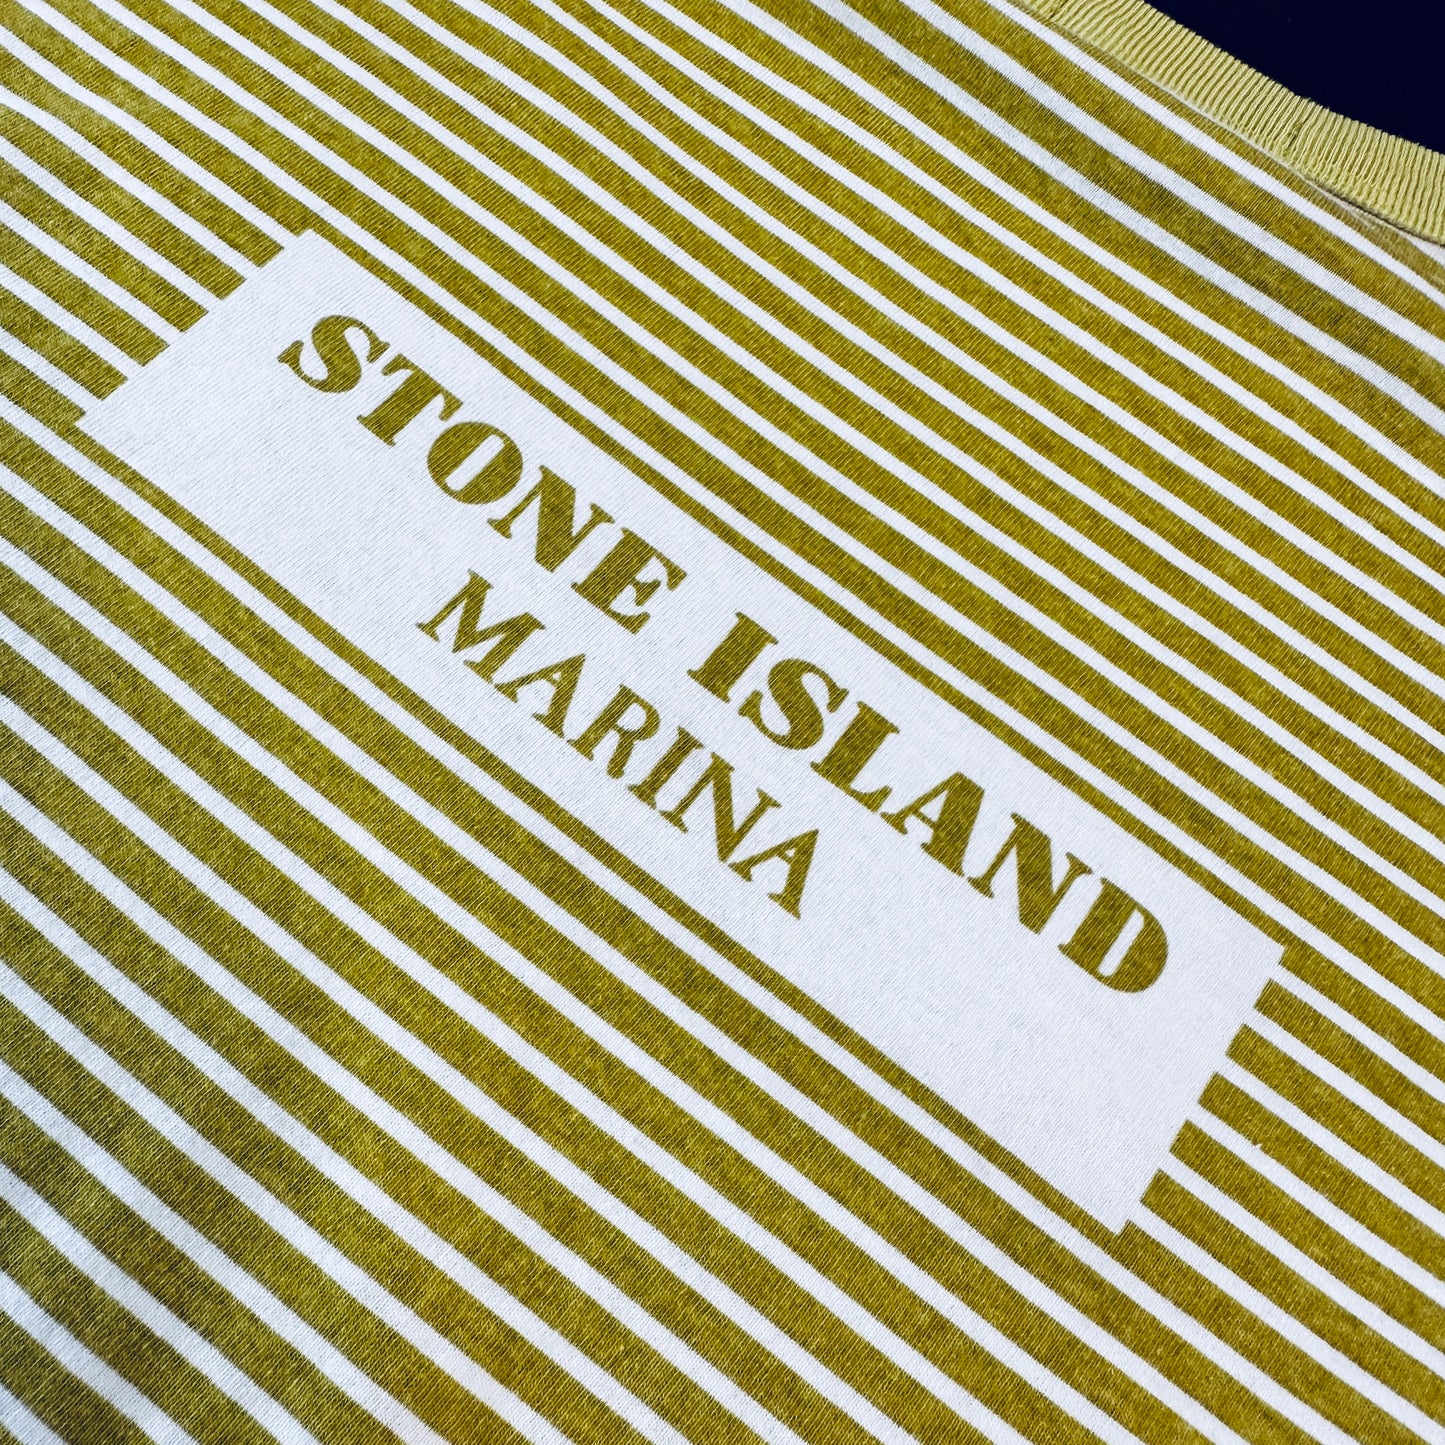 Stone Island Marina Longsleeve T-Shirt - L - Made in Italy